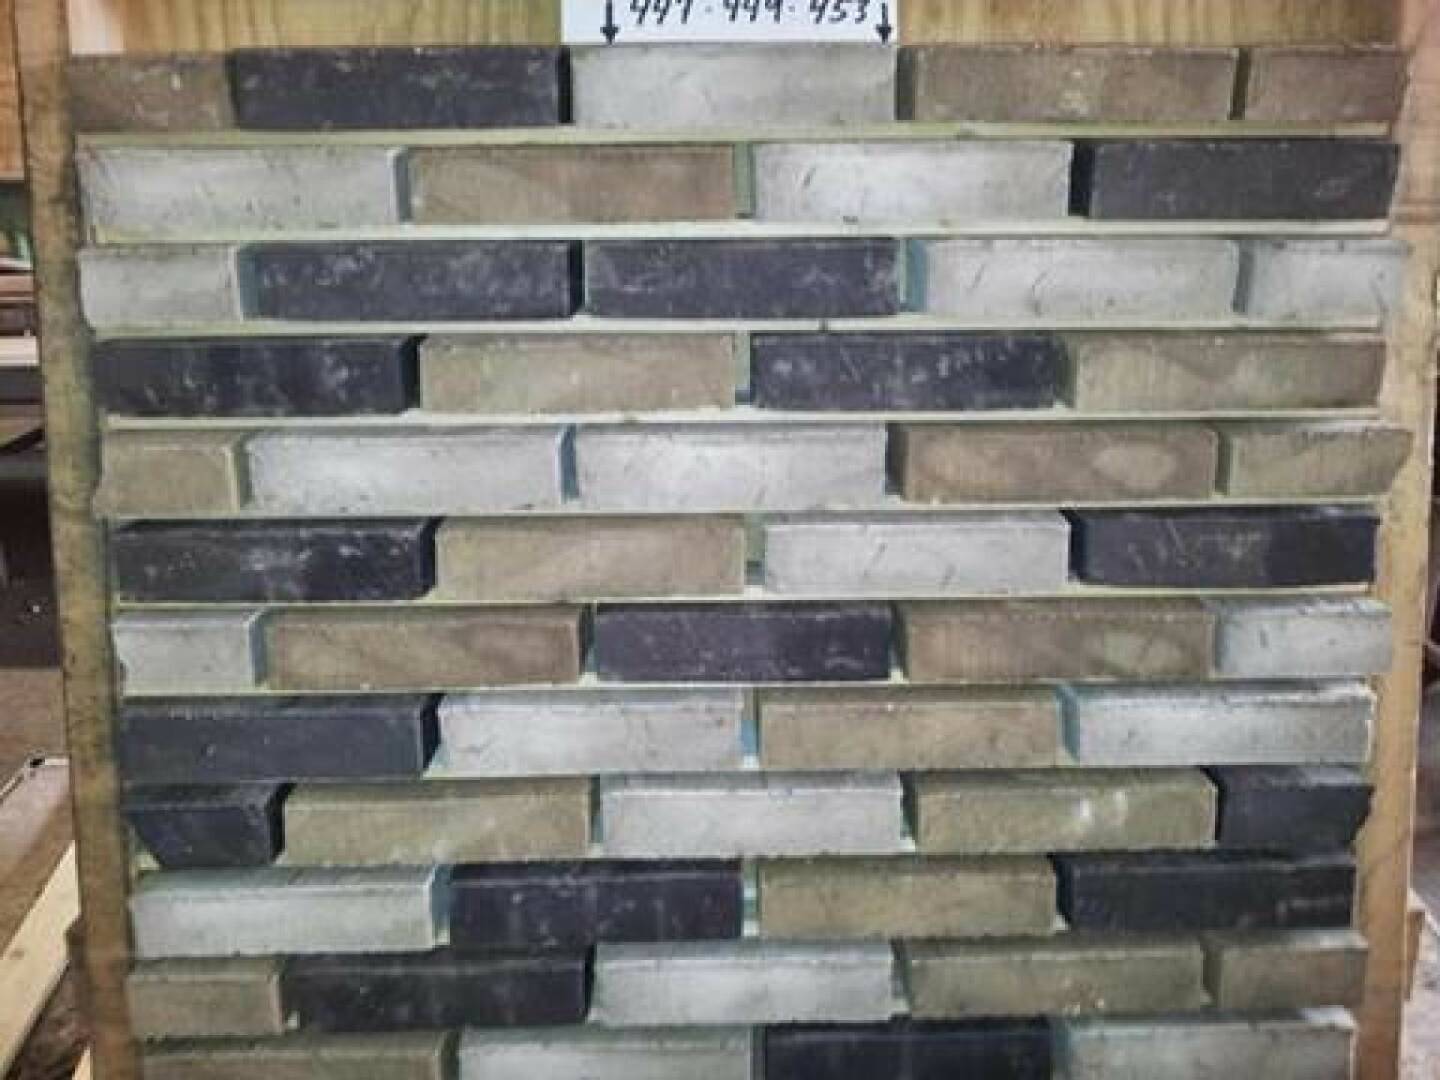 Beispiel eines mixed brick von Wienerberger, Stenstrup southern Denmark, https://www.facebook.com/wienerberger